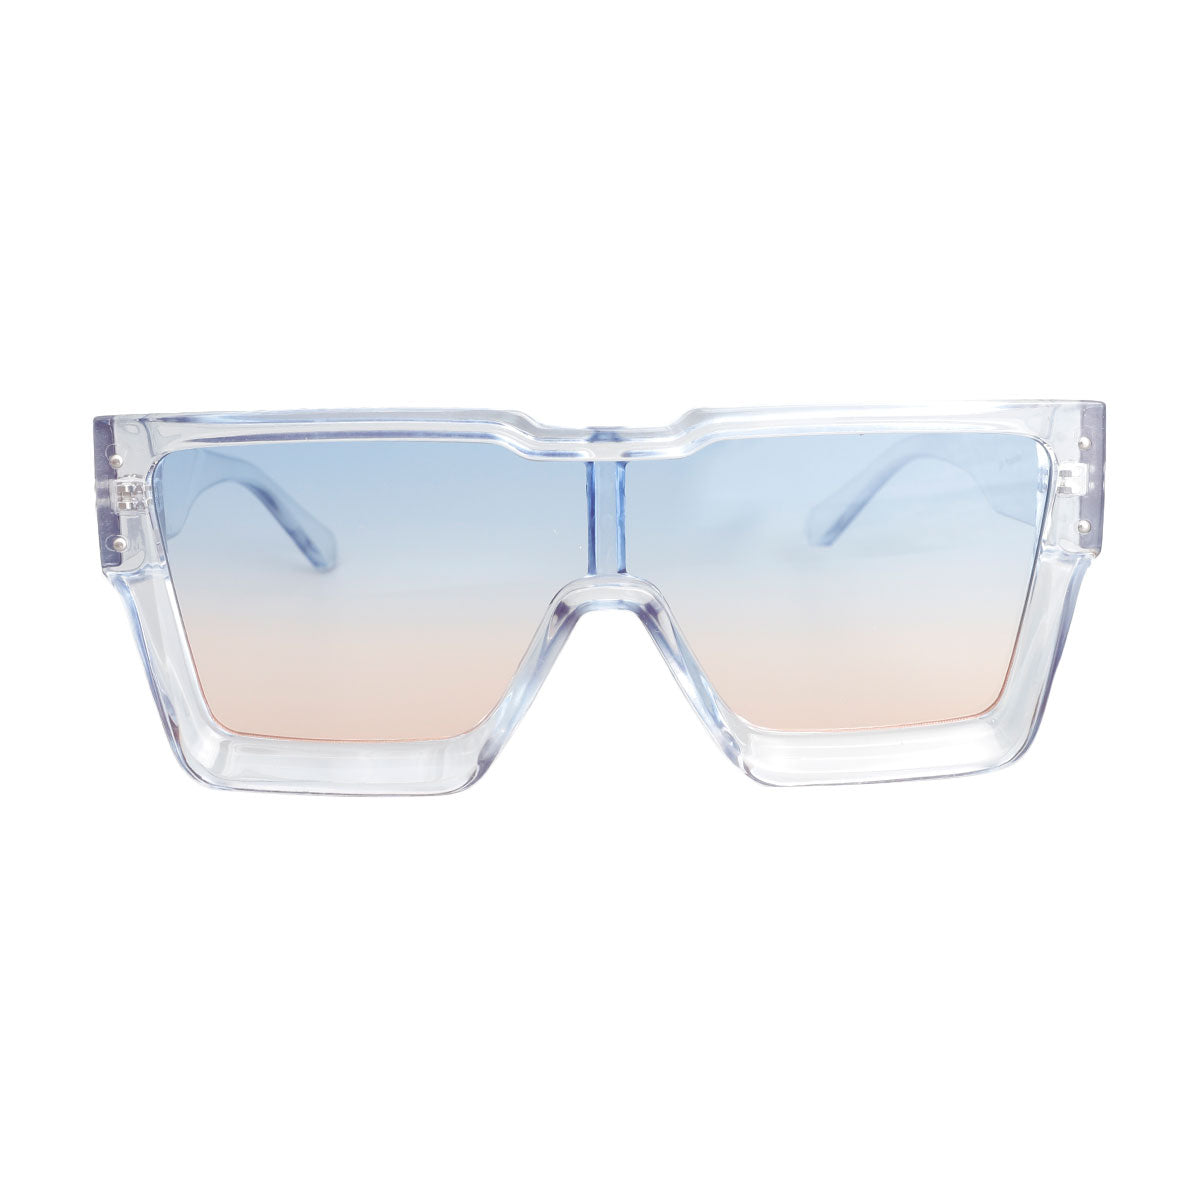 Blue Square Thick Frame Sunglasses